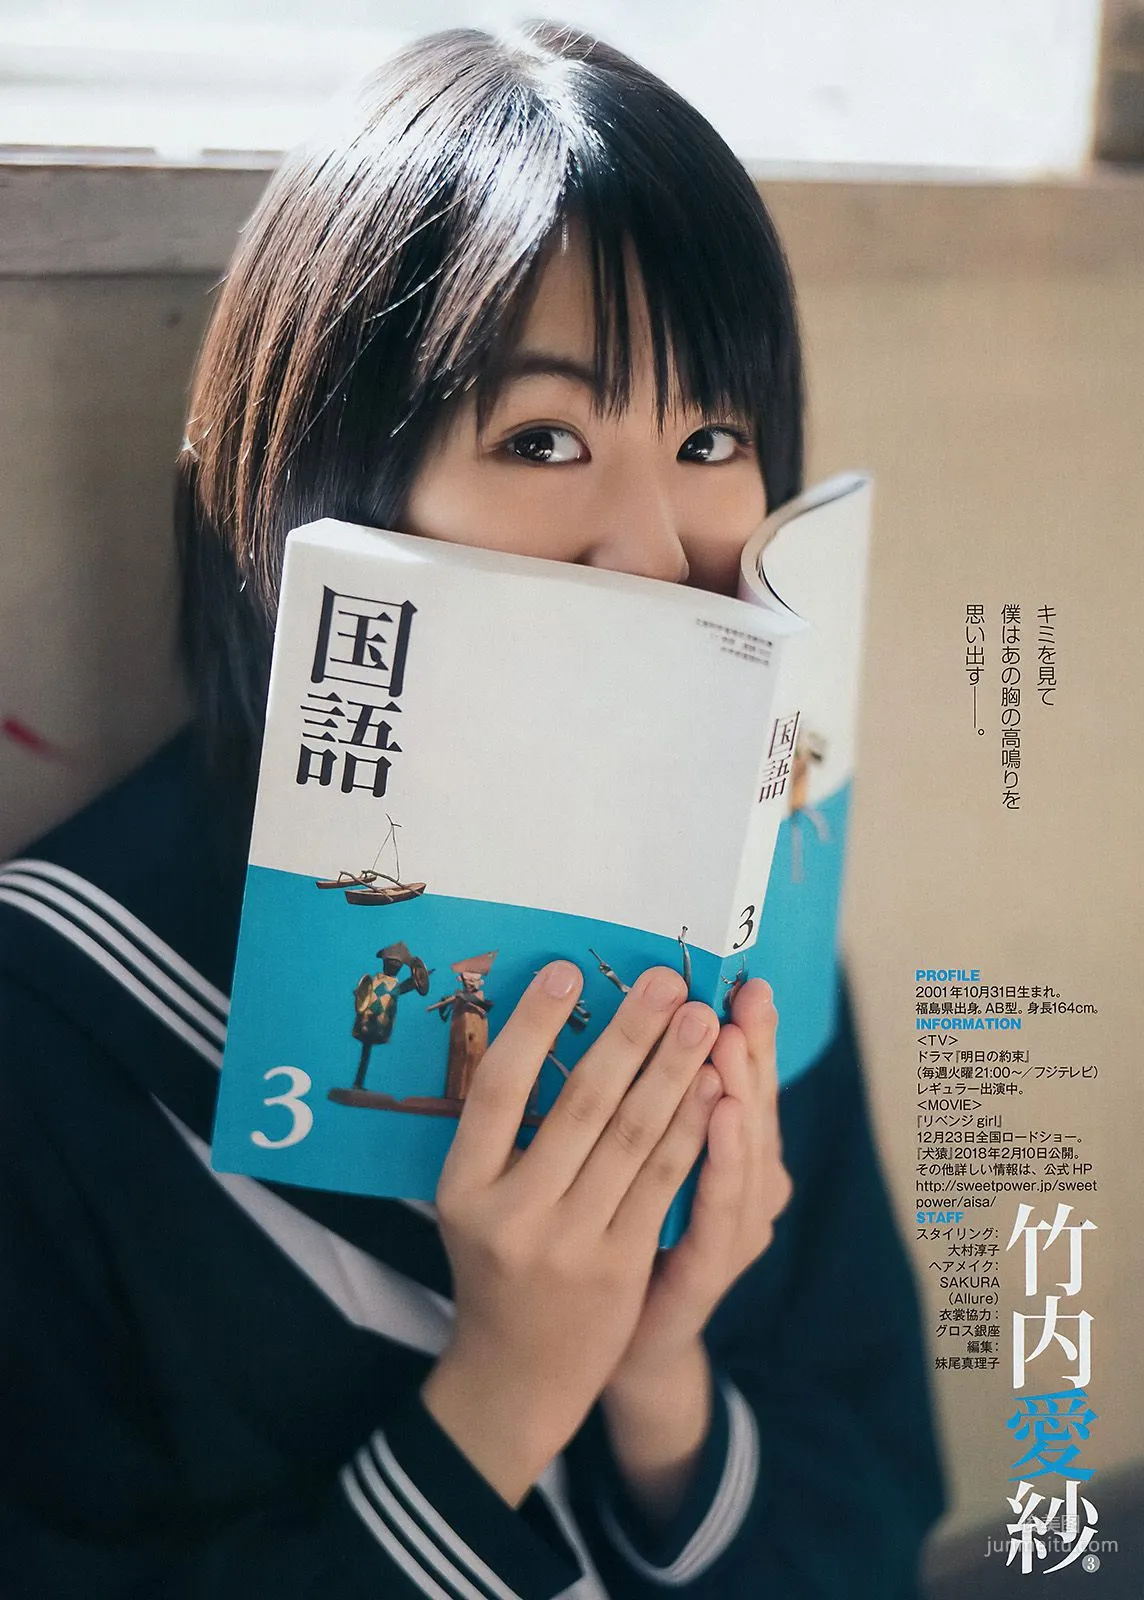 松田るか 岡田紗佳 竹内愛紗 [Weekly Young Jump] 2018年No.02 写真杂志16